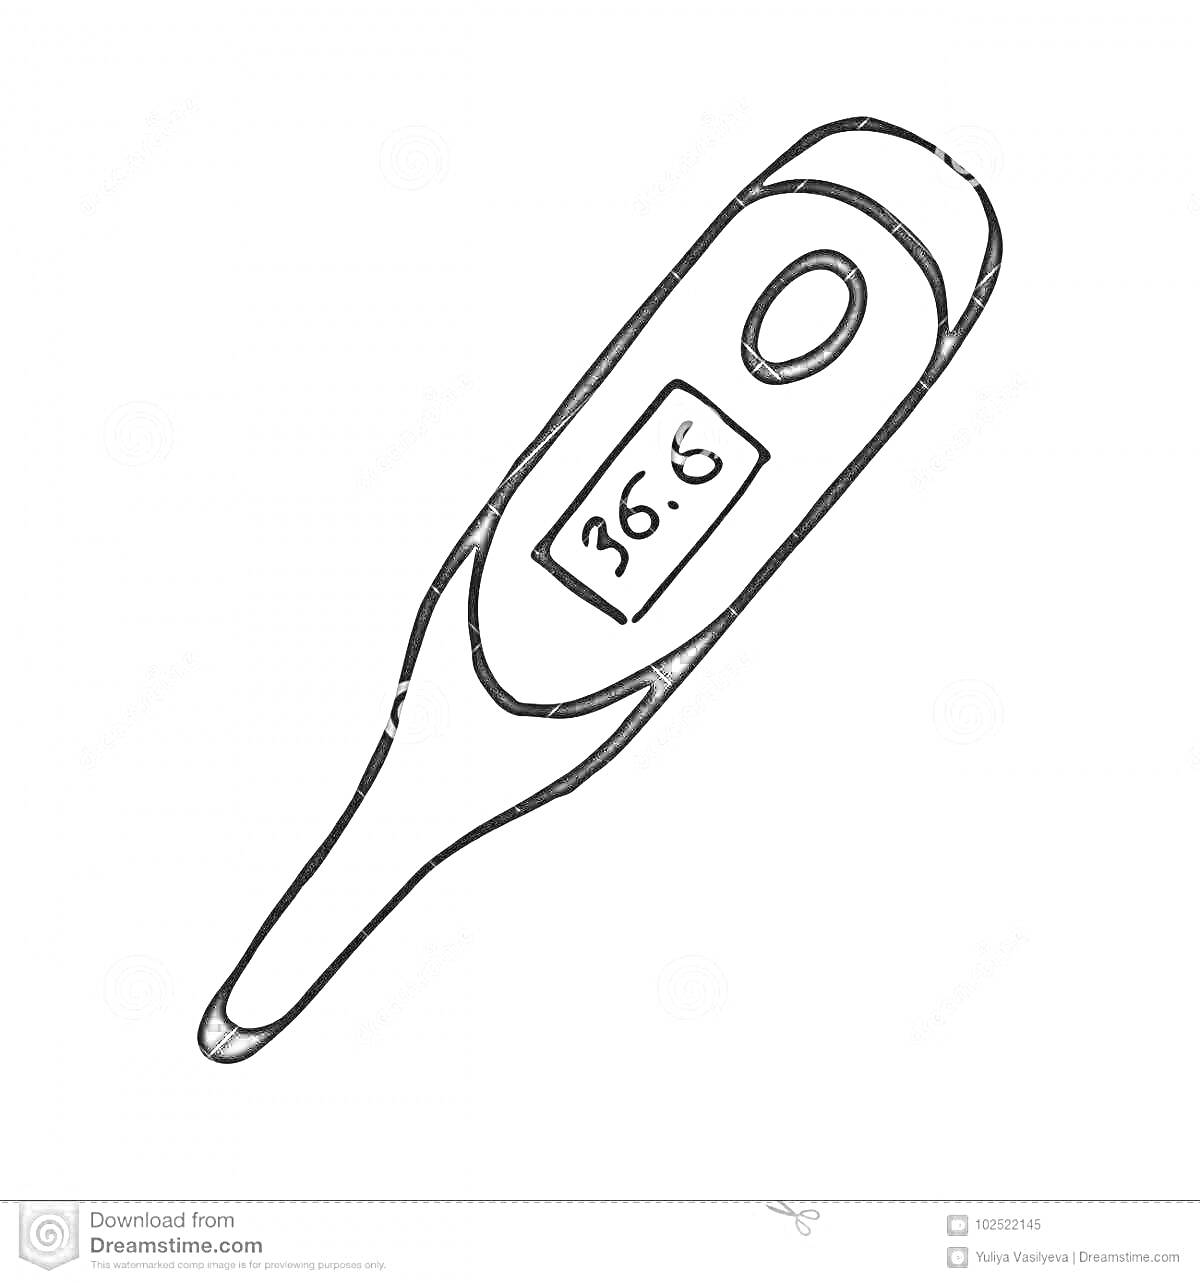 На раскраске изображено: Градусник, Термометр, Температура, Измерение температуры, Медицинский прибор